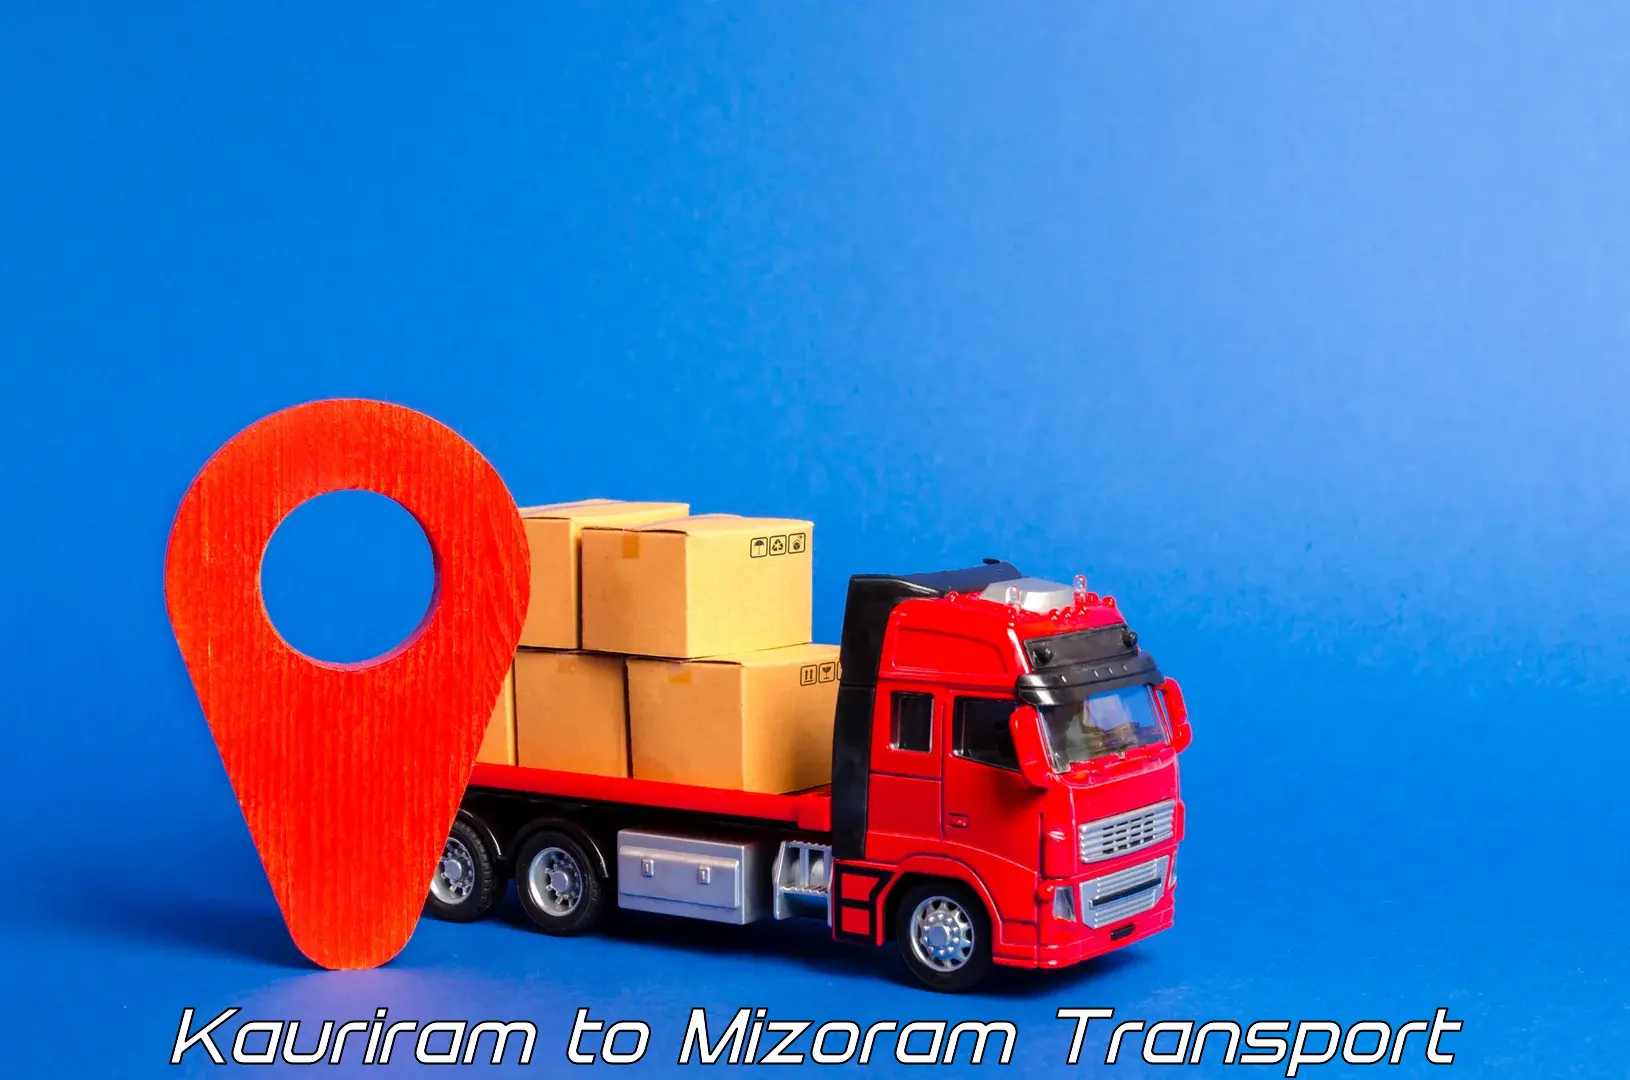 Transport in sharing in Kauriram to Saitual